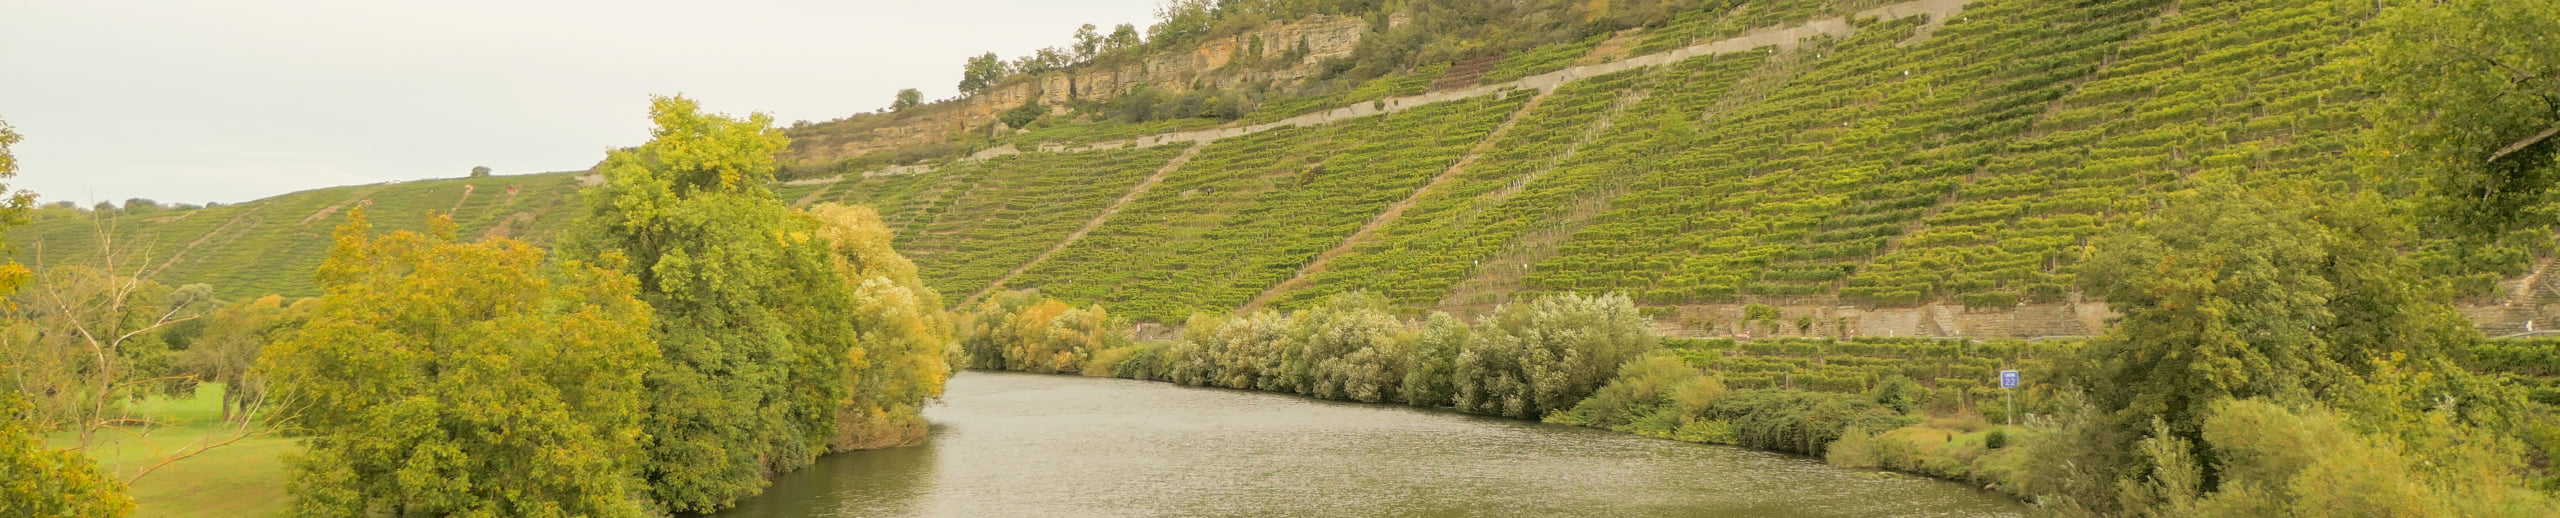 Der Neckar fließt im Weinanbaugebiet